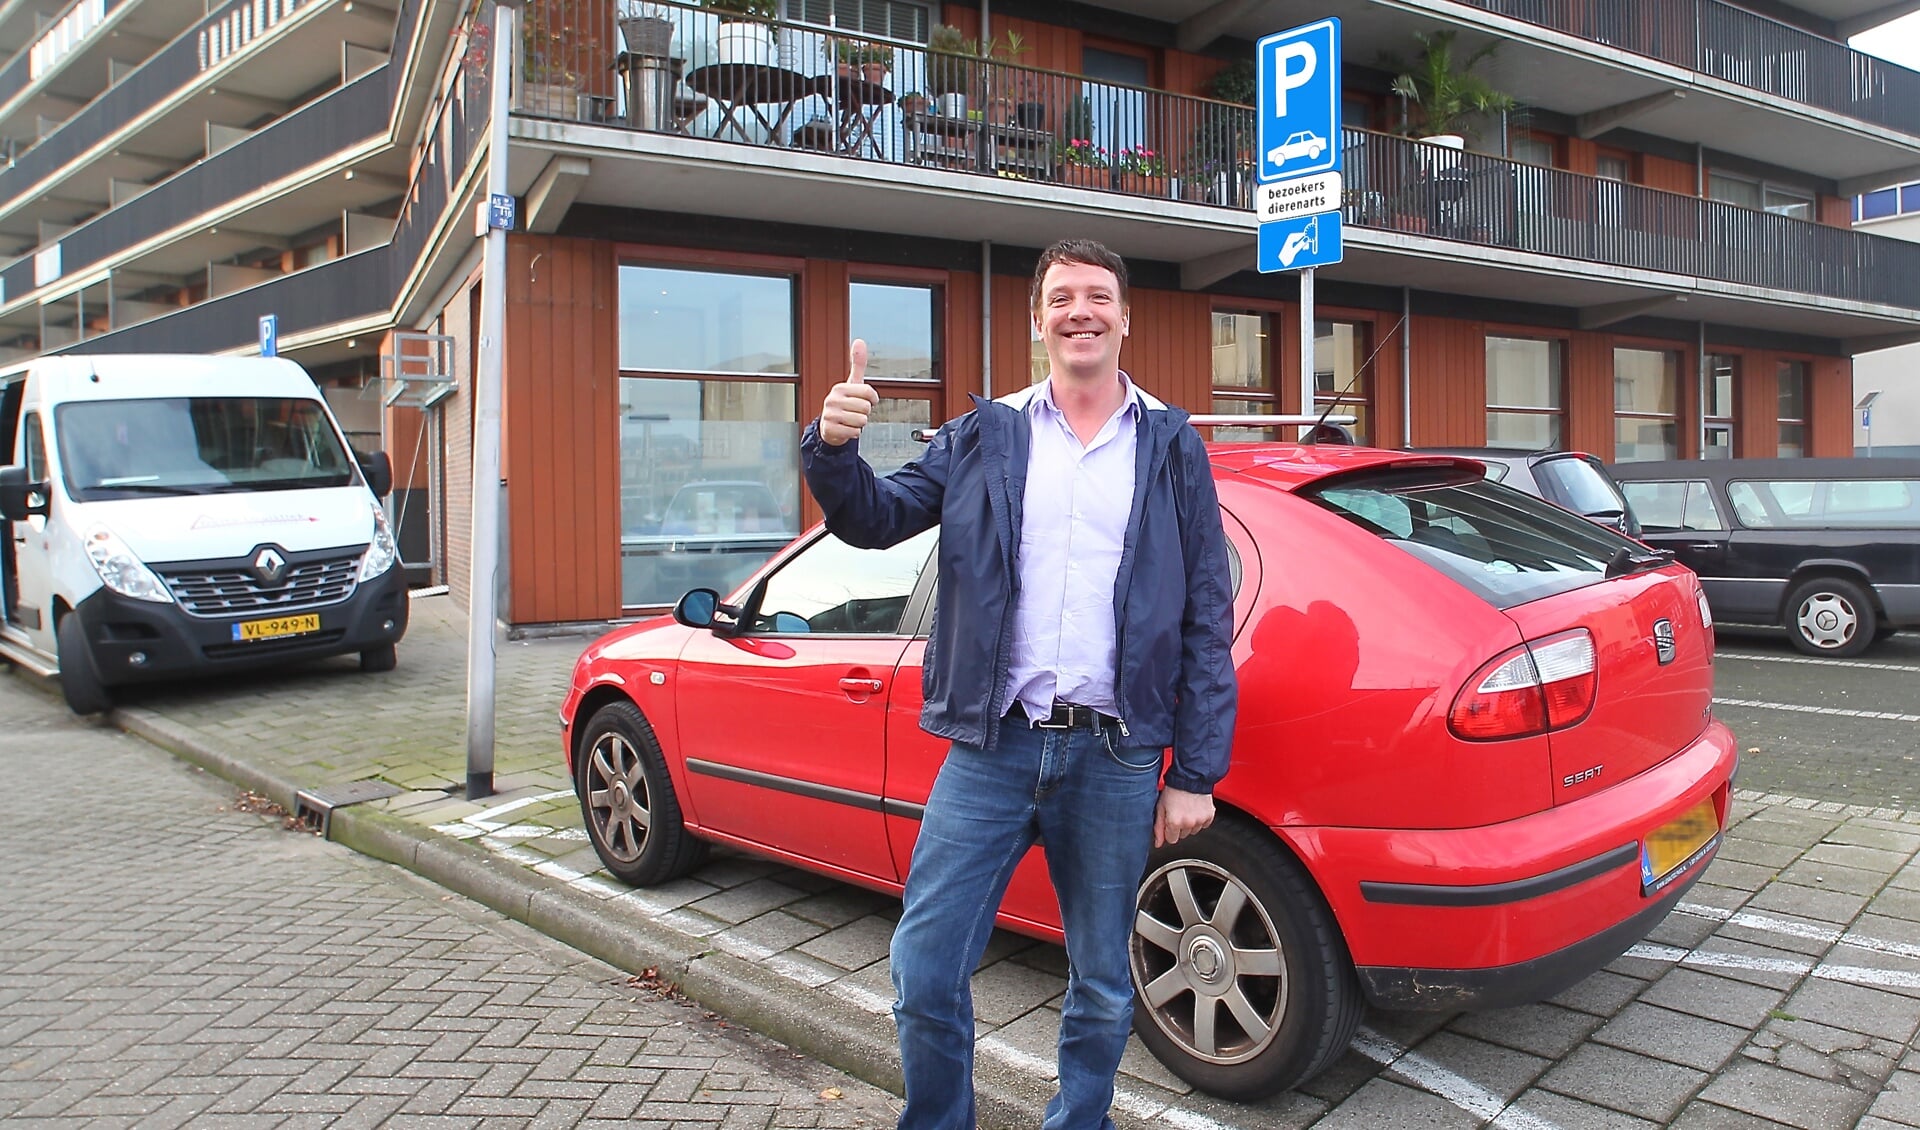 Dierenarts Van Nijhuis is blij met de twee parkeerplaatsen die voor zijn praktijk zijn gerealiseerd. 